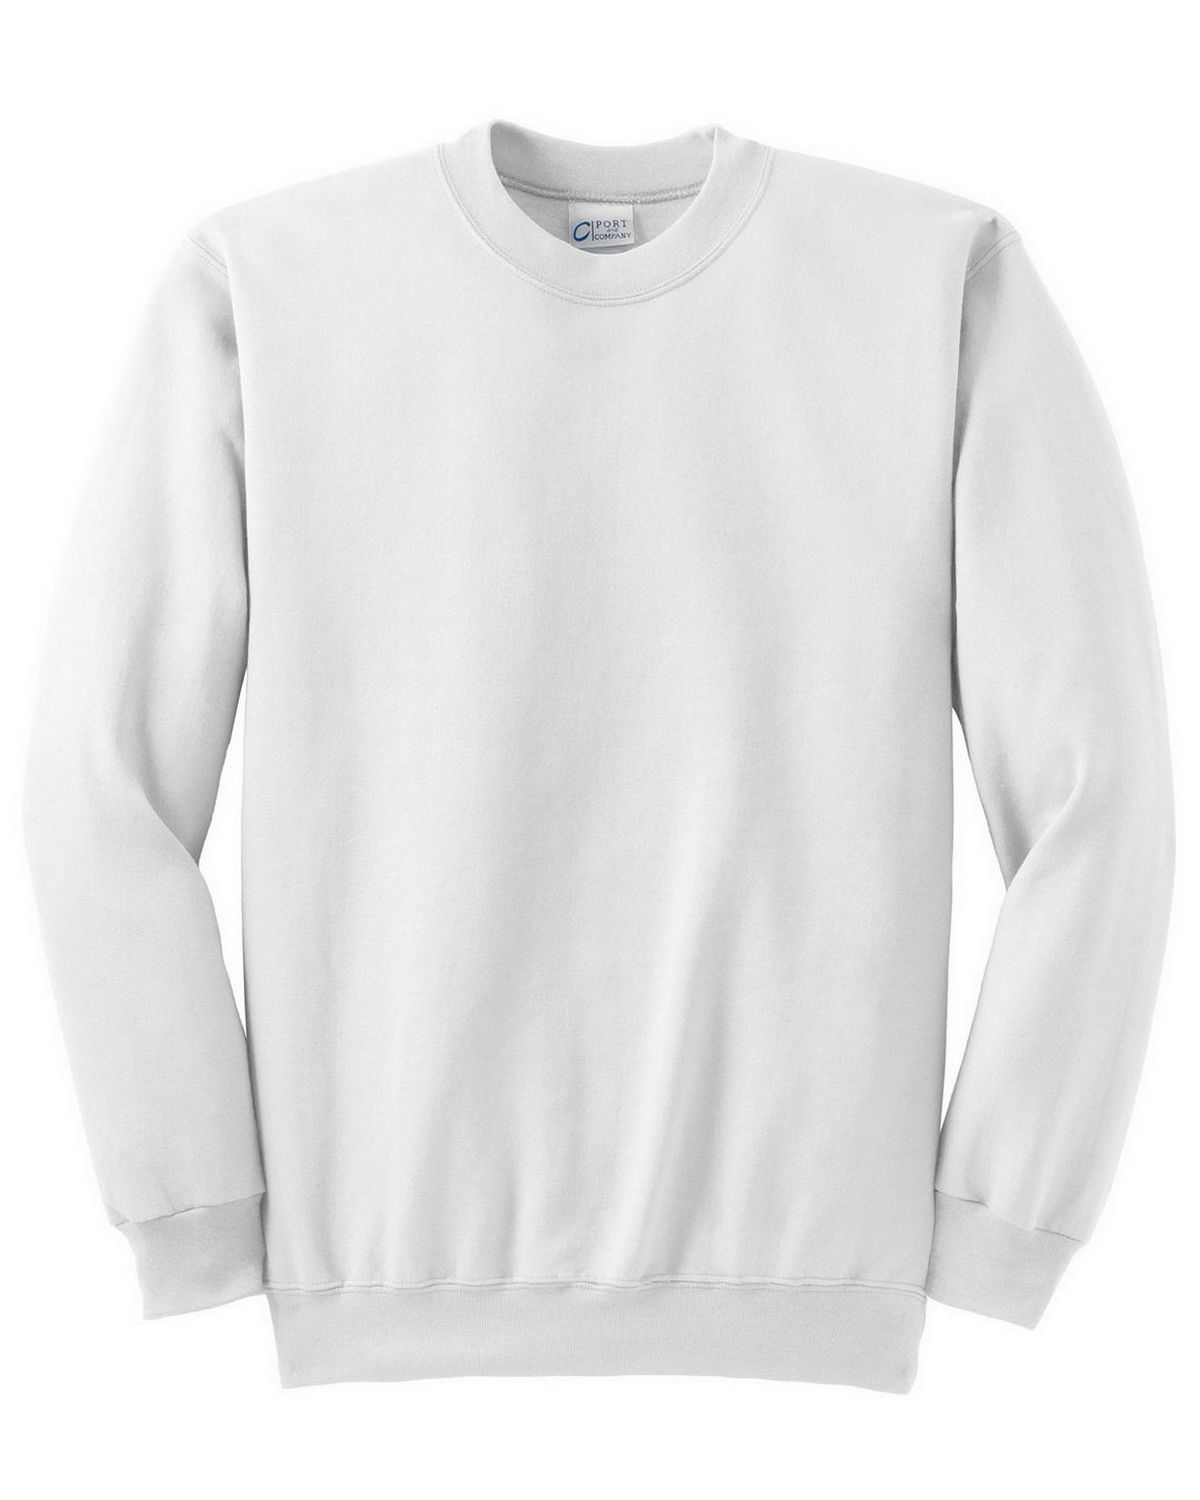 Download Port & Company PC90 Crewneck Sweatshirt - Shop at ApparelnBags.com